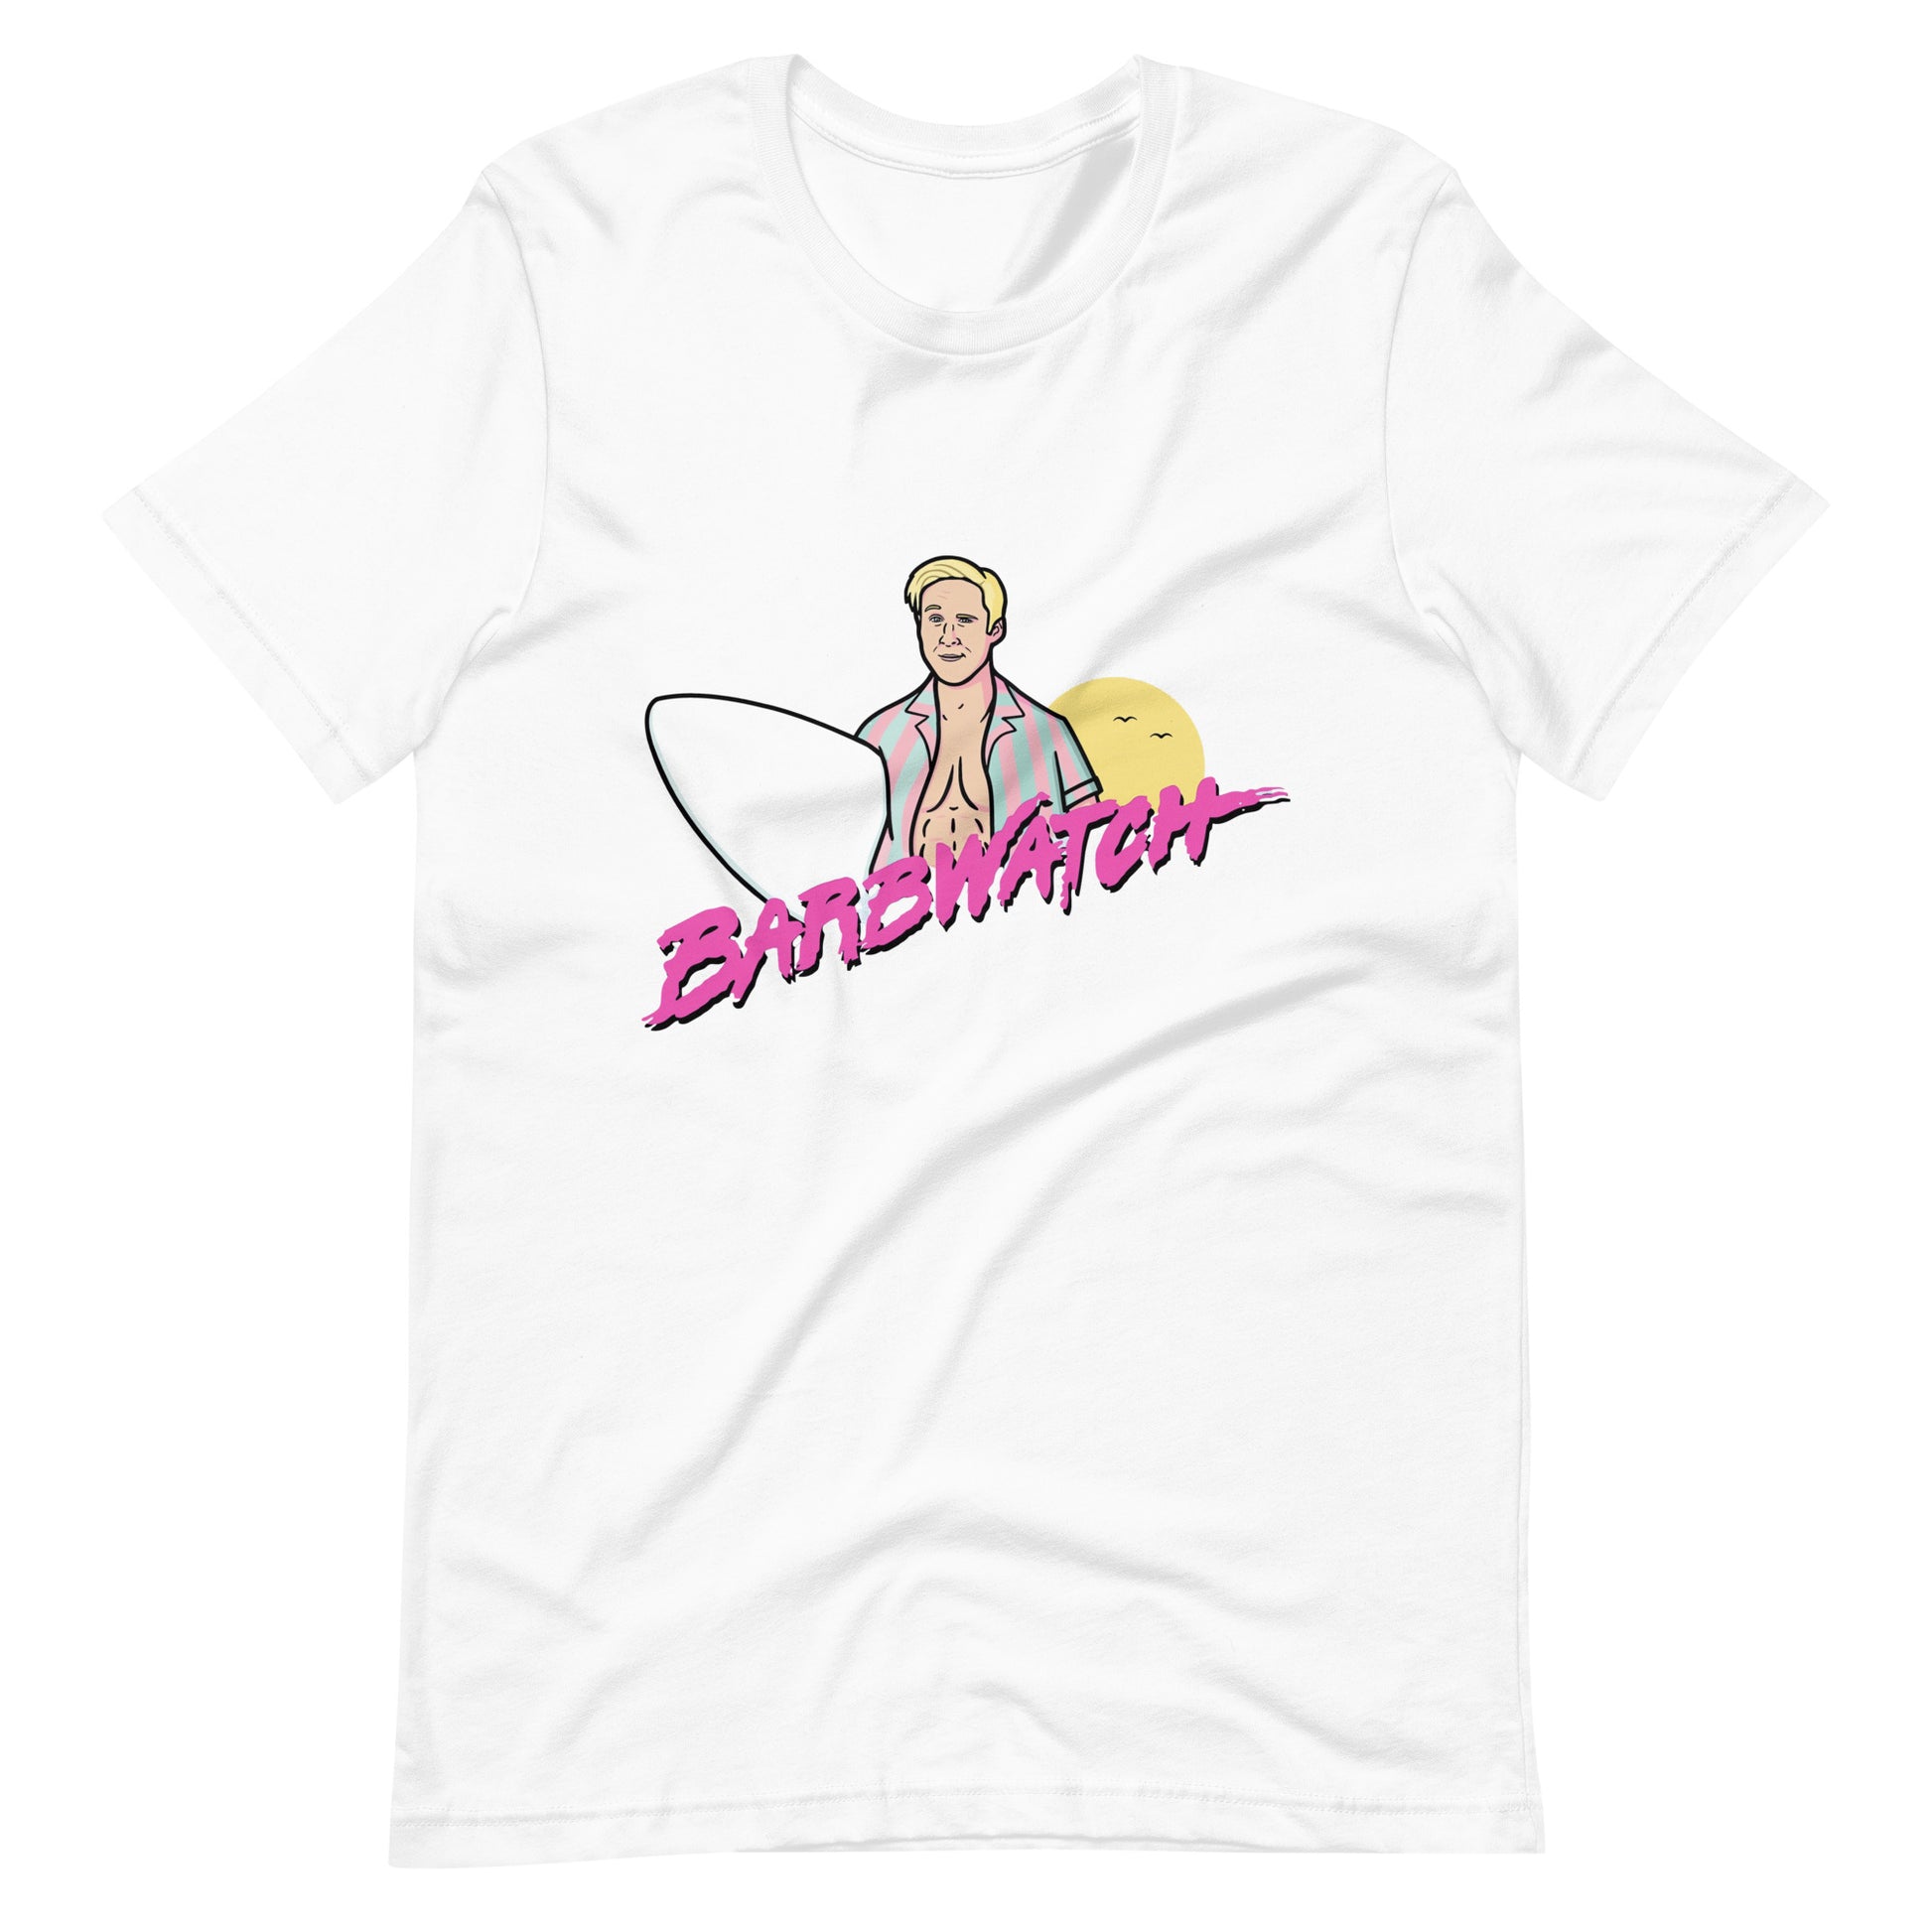 ¡Compra el mejor merchandising en Superstar! Encuentra diseños únicos y de alta calidad en camisetas únicas, Camiseta Barbwatch